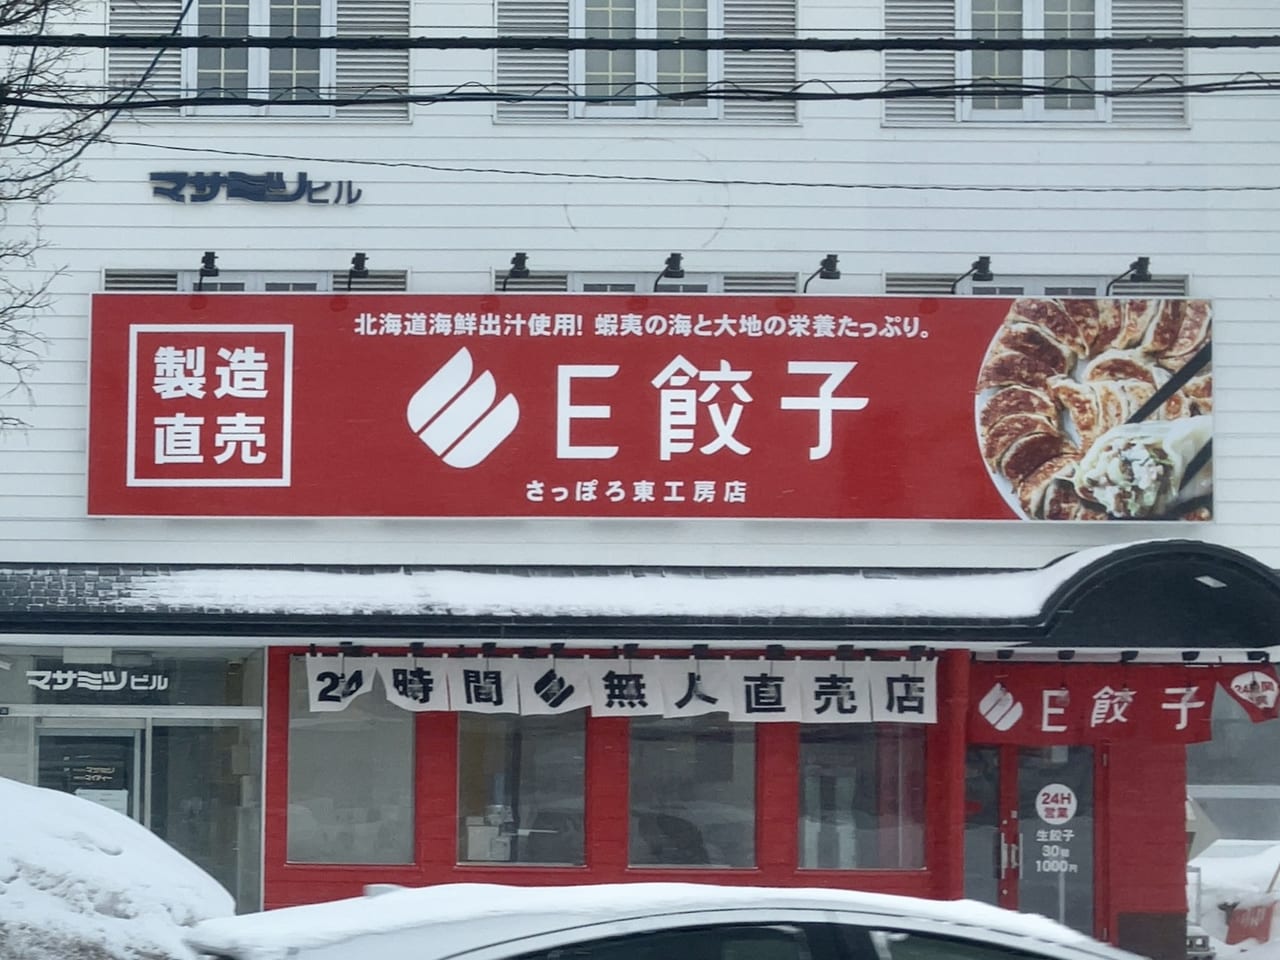 駐車場完備で買いやすい。3月18日に無人餃子専門店「E餃子」が伏古にオープンしますよ！